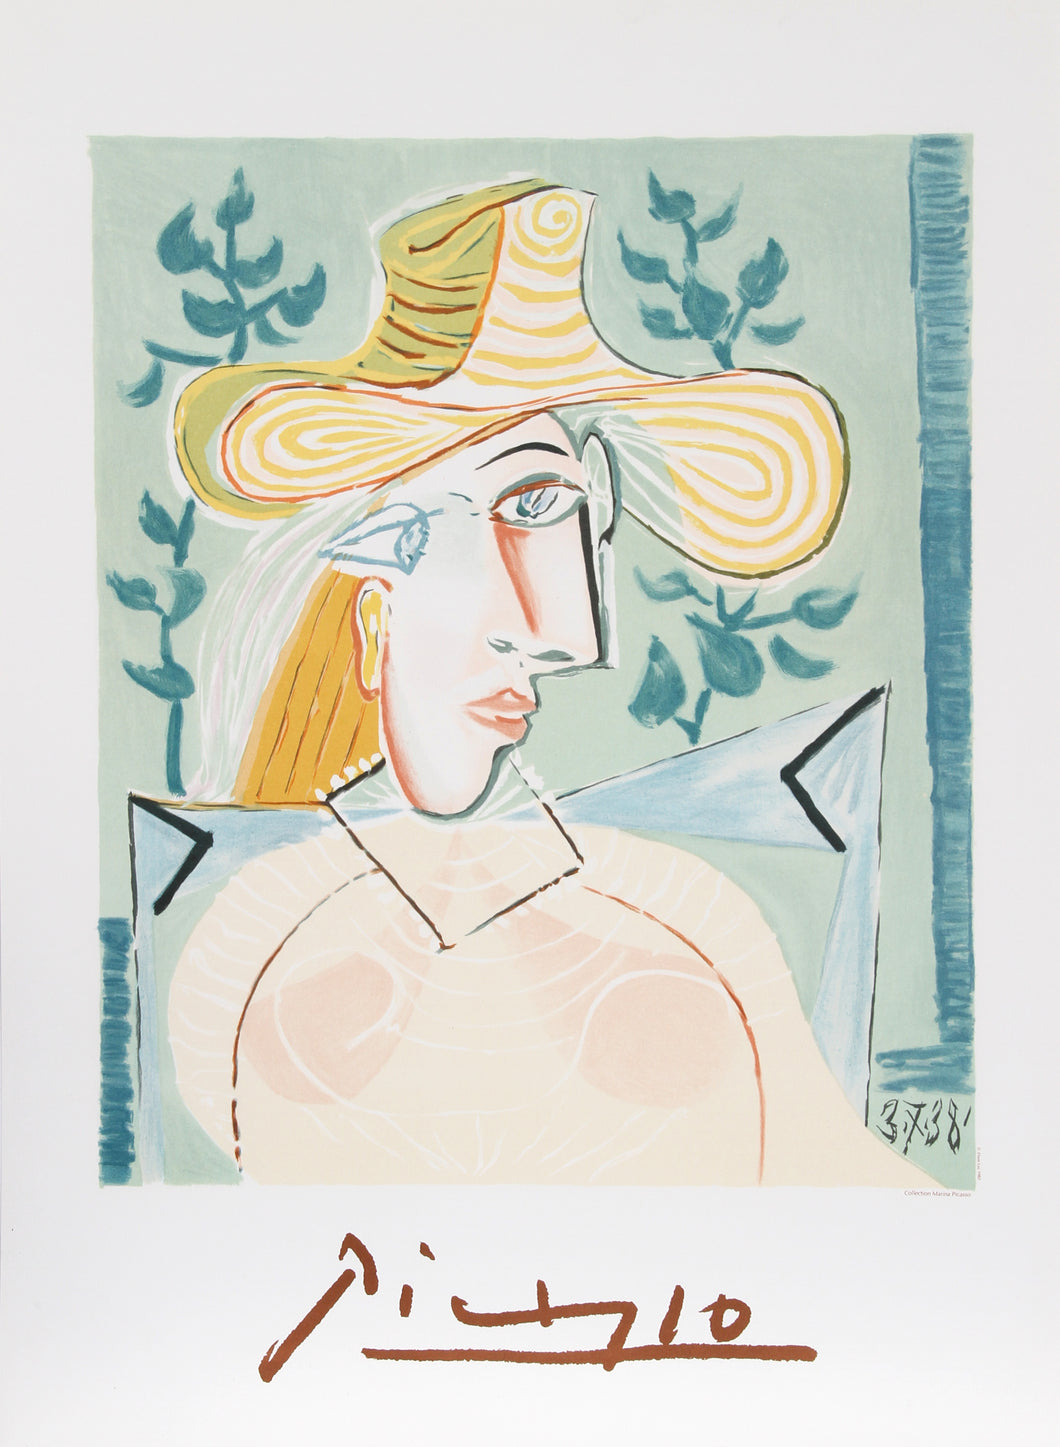 Pablo Picasso, Femme a la Collerette, 16-A-k, Lithograph